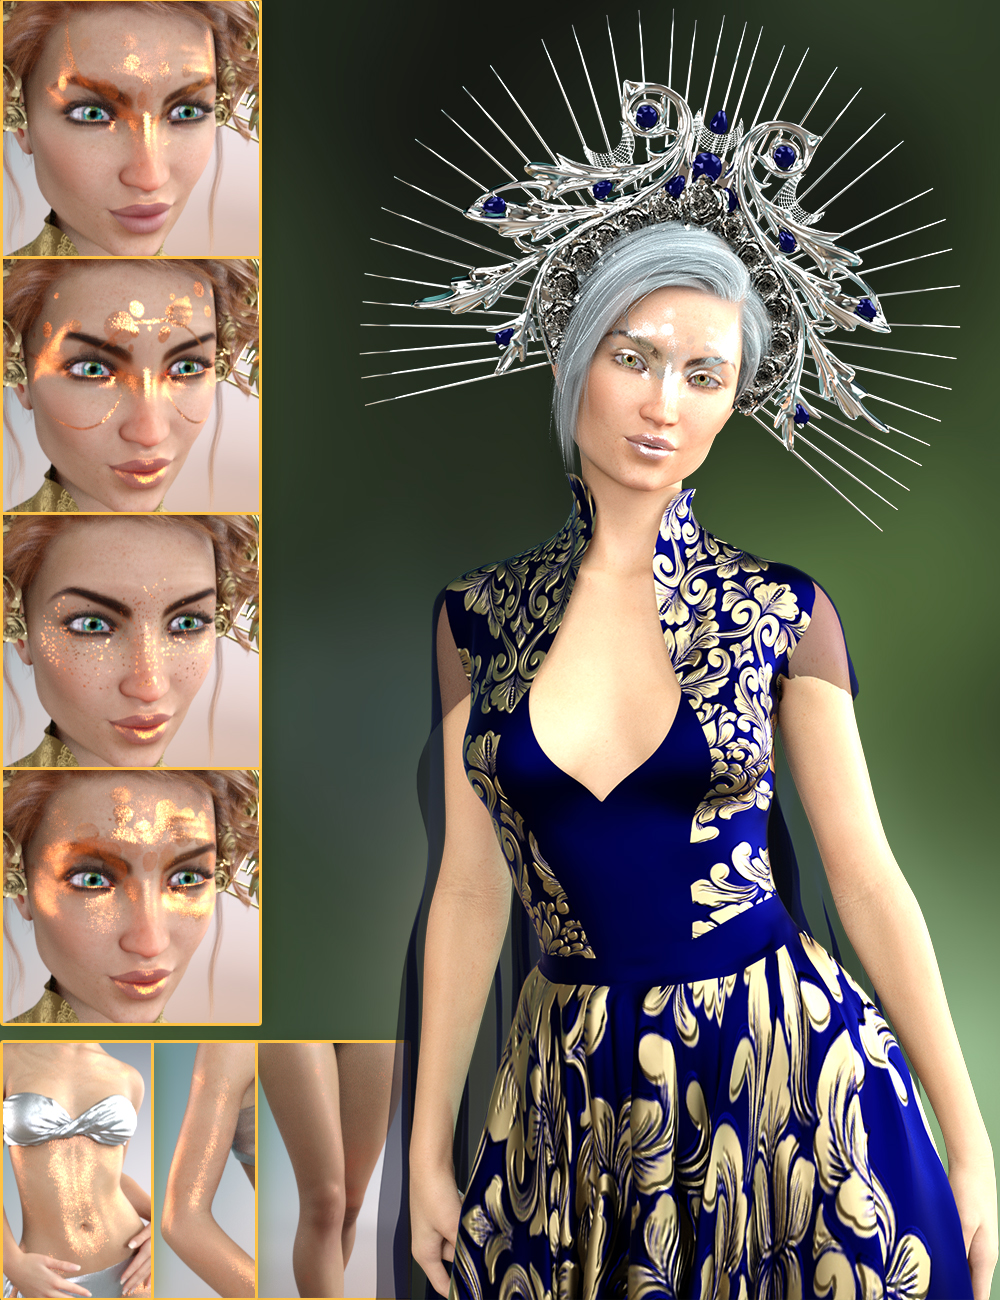 Morgany for Genesis 8.1 Female by: SpookieLilOnehotlilme74, 3D Models by Daz 3D